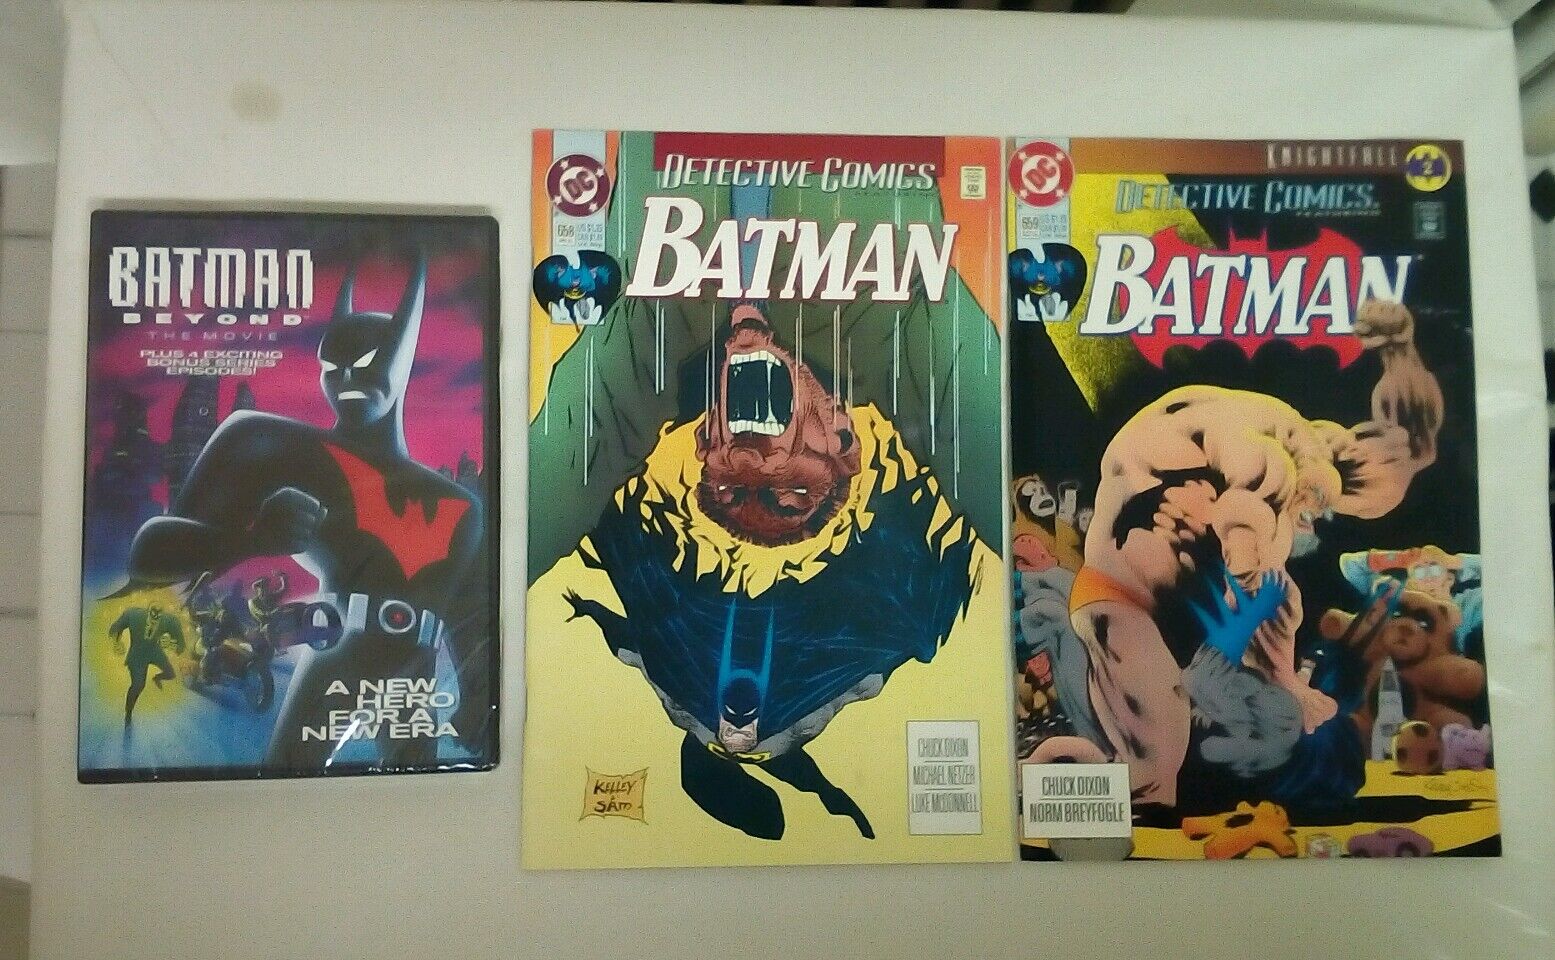 Batman Beyond DVD + Detective Comics issue #658 + 659(For true Batman fans)